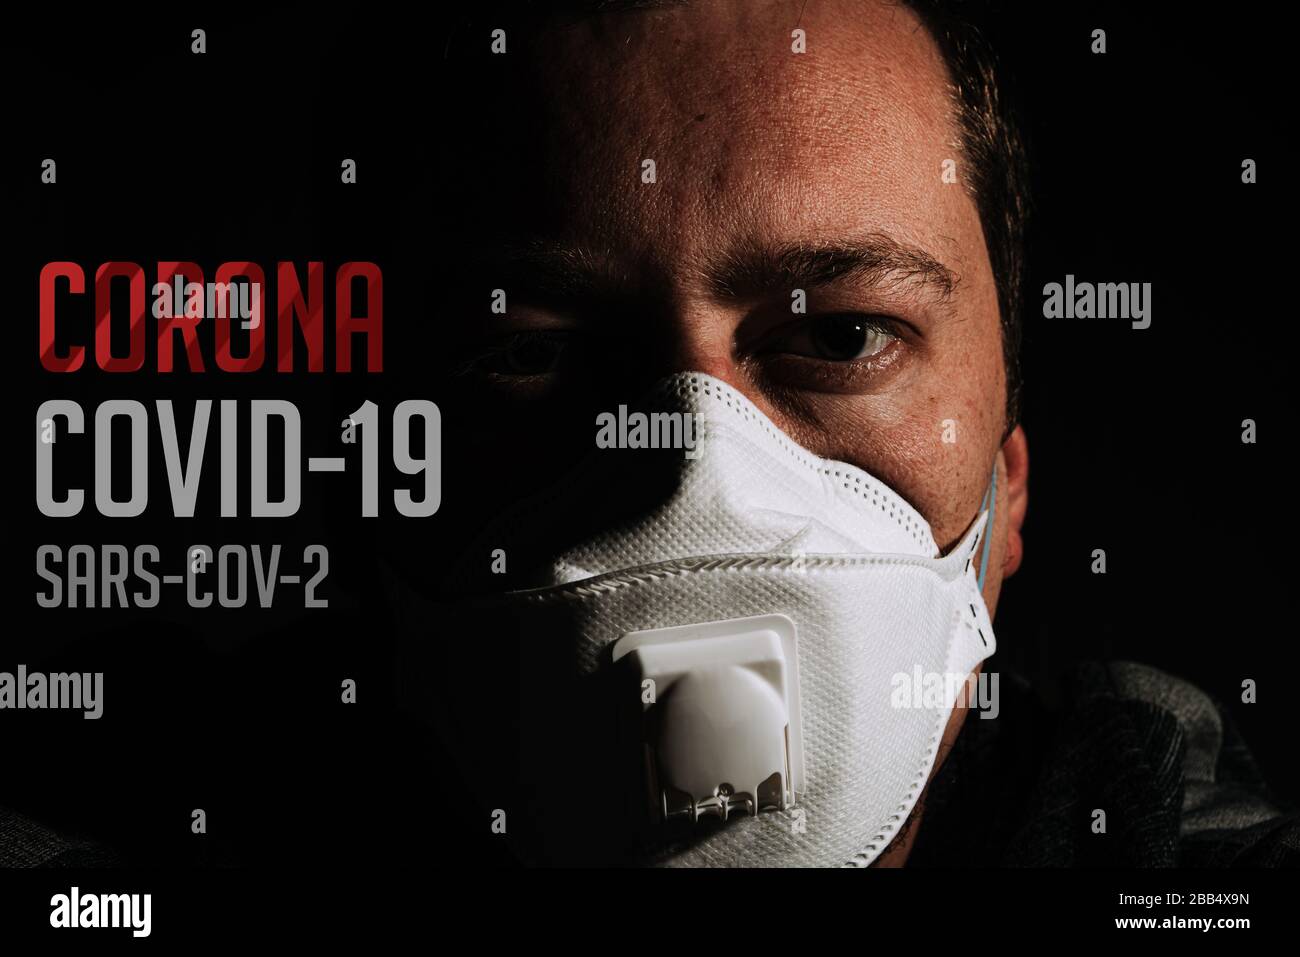 uomo con maschera respiratore per protezione coronavirus covid-19 su sfondo nero con testo Foto Stock